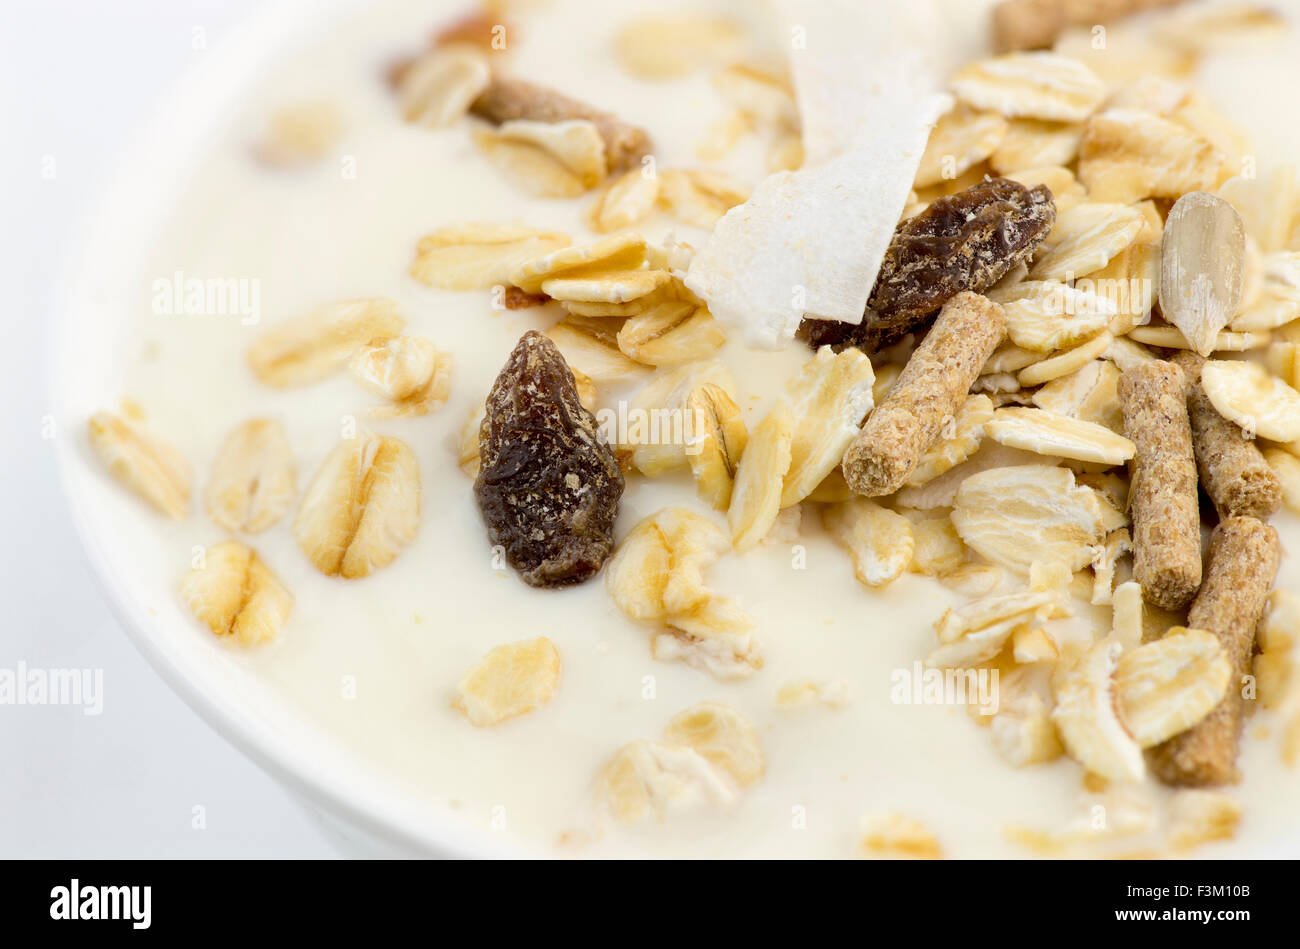 Makro Nahaufnahme von köstlichen fettarmen Joghurt mit Hafer, Müsli, Kleie, Mandeln und getrockneten Früchten Stockfoto